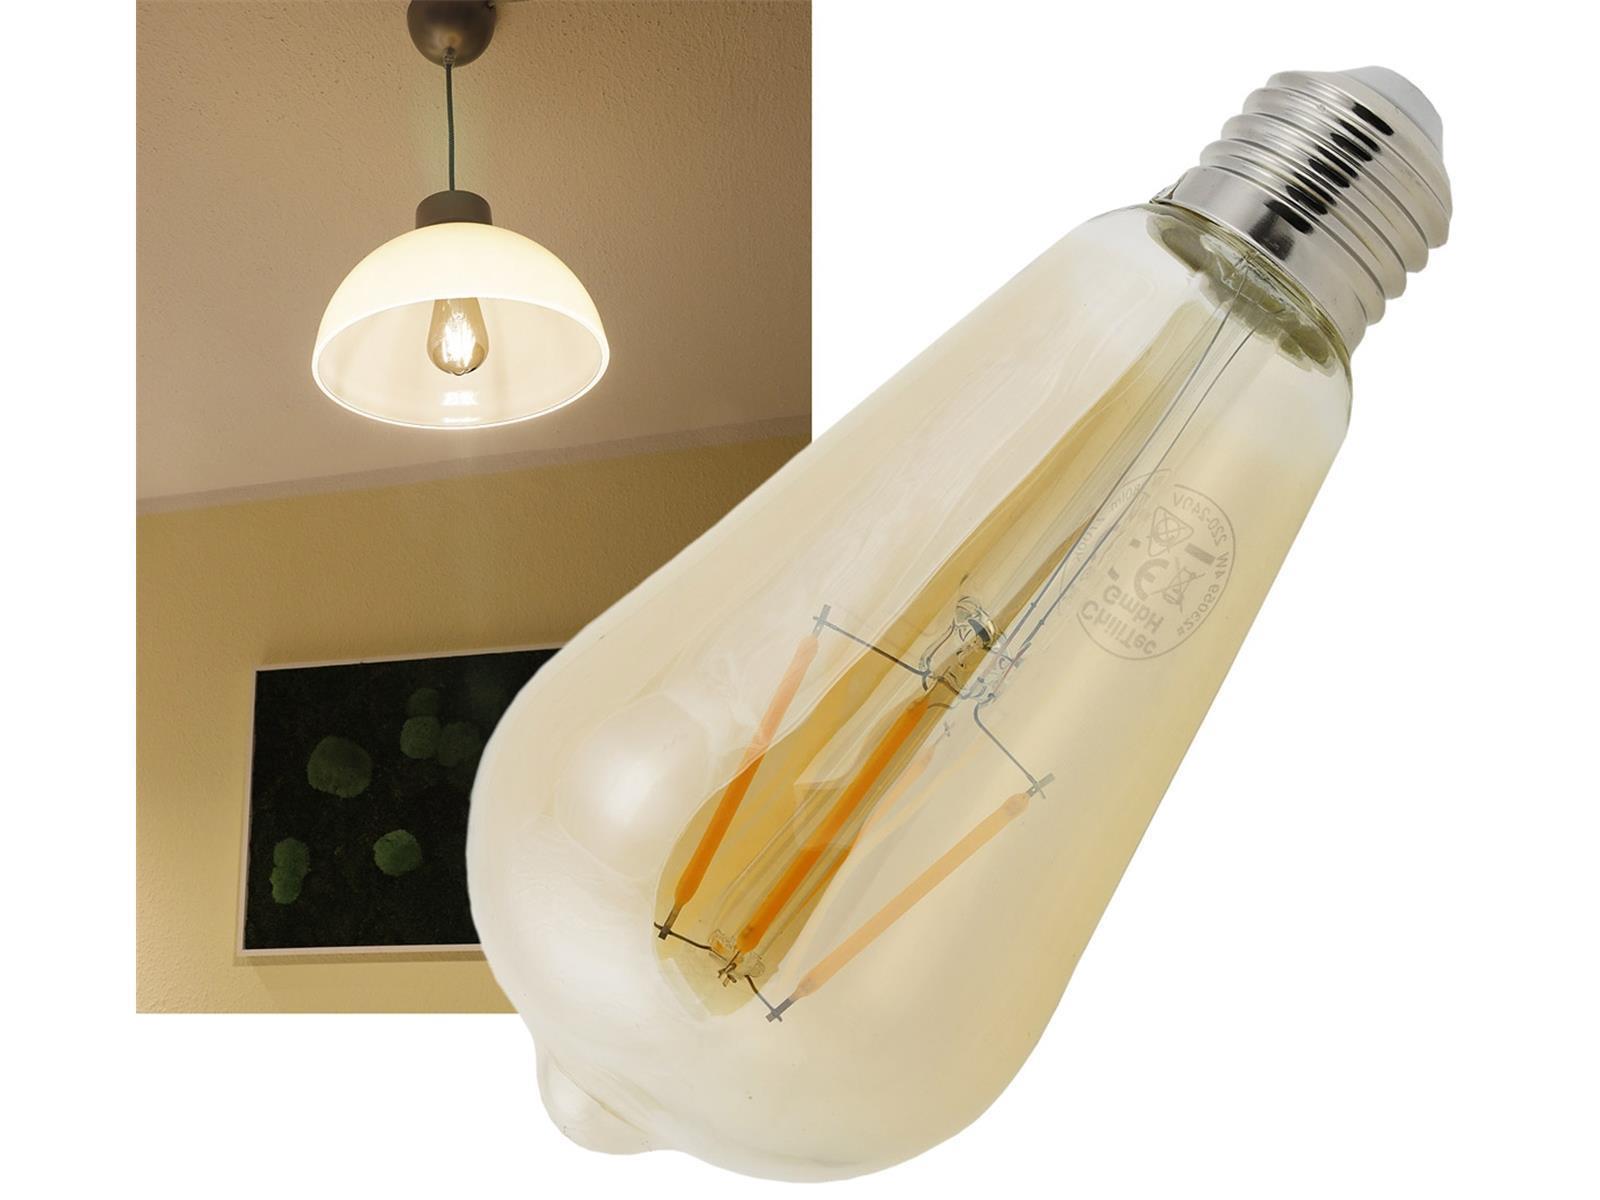 LED Glühlampe E27 "Vintage ST64" 2700k, 380lm, 230V/4W, warmweiß/amber